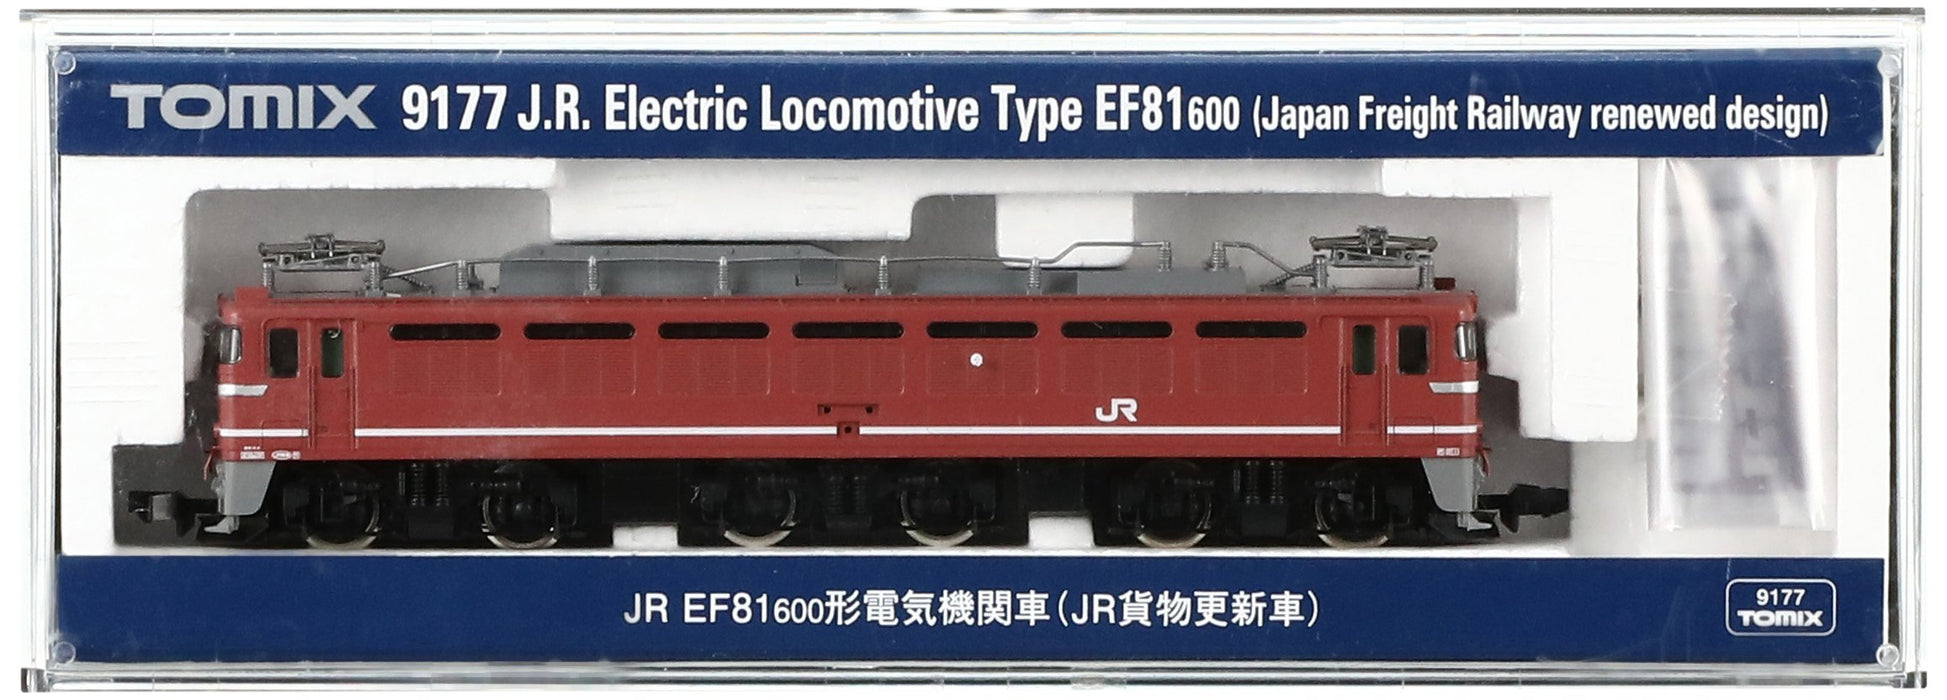 Tomytec Tomix EF81 600 JR Locomotive électrique de fret renouvelée modèle de voiture ferroviaire